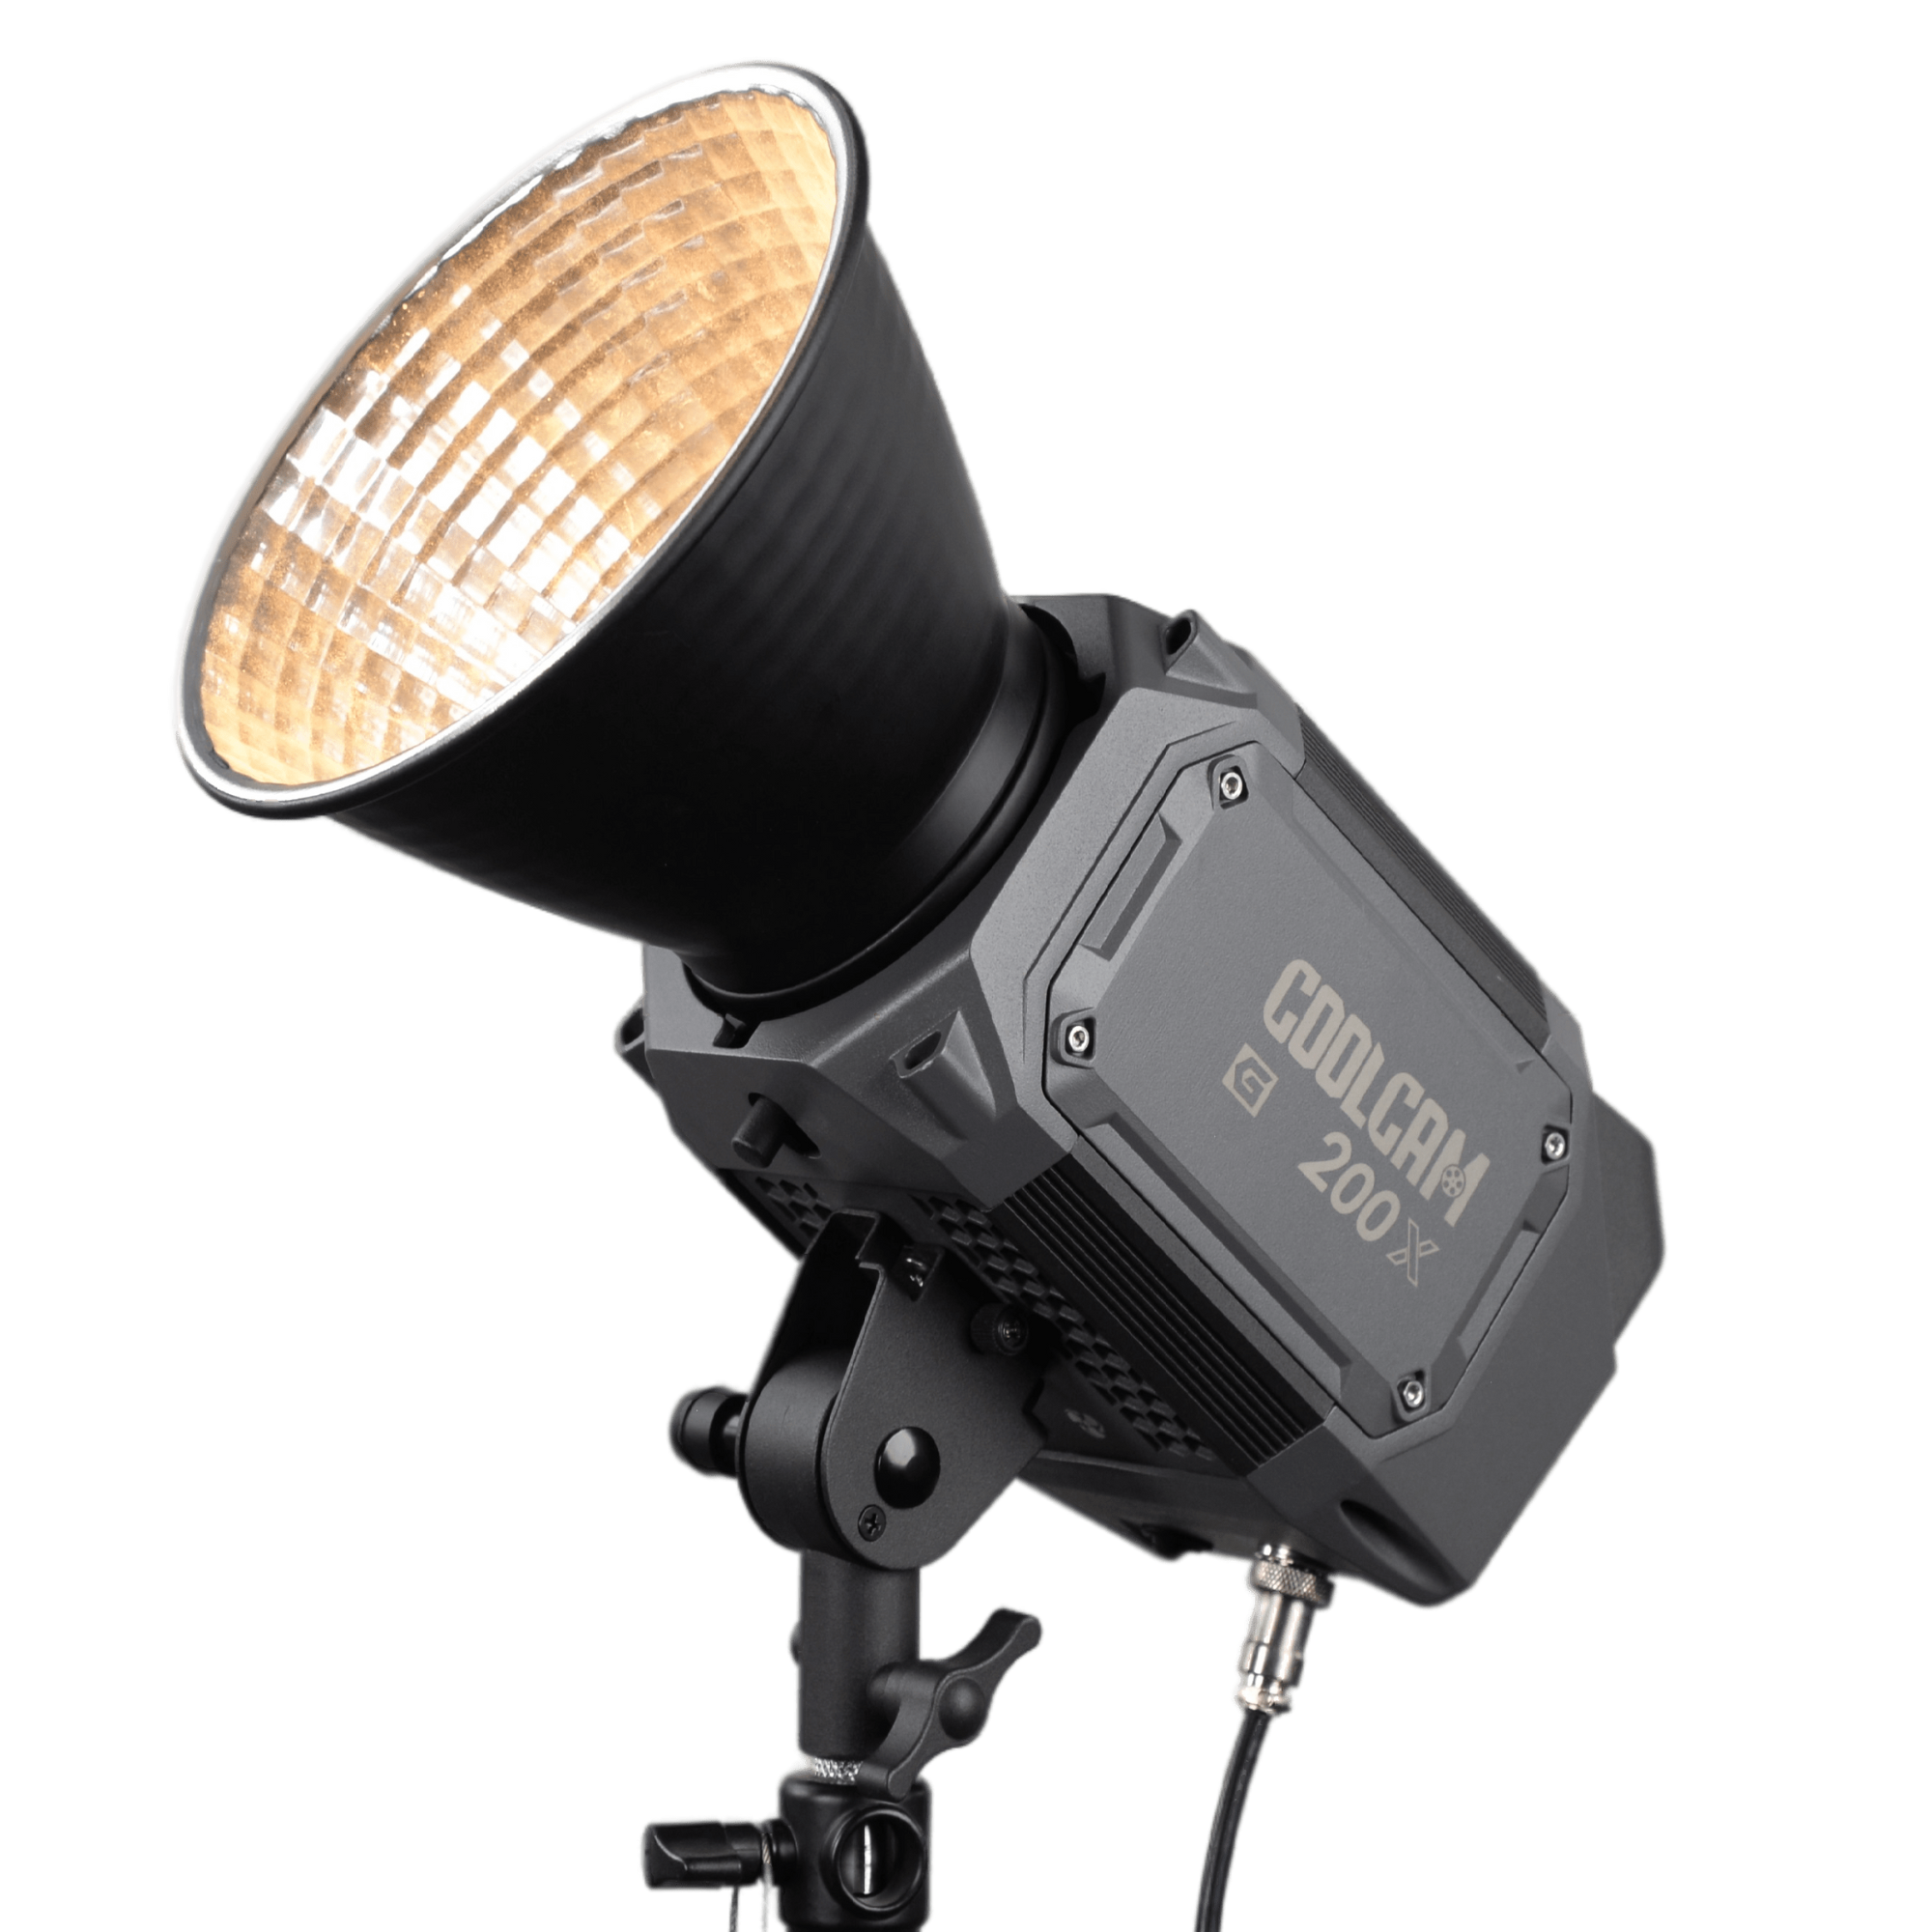 Luz de vídeo continua LED de alta potencia LS Coolcam 200X